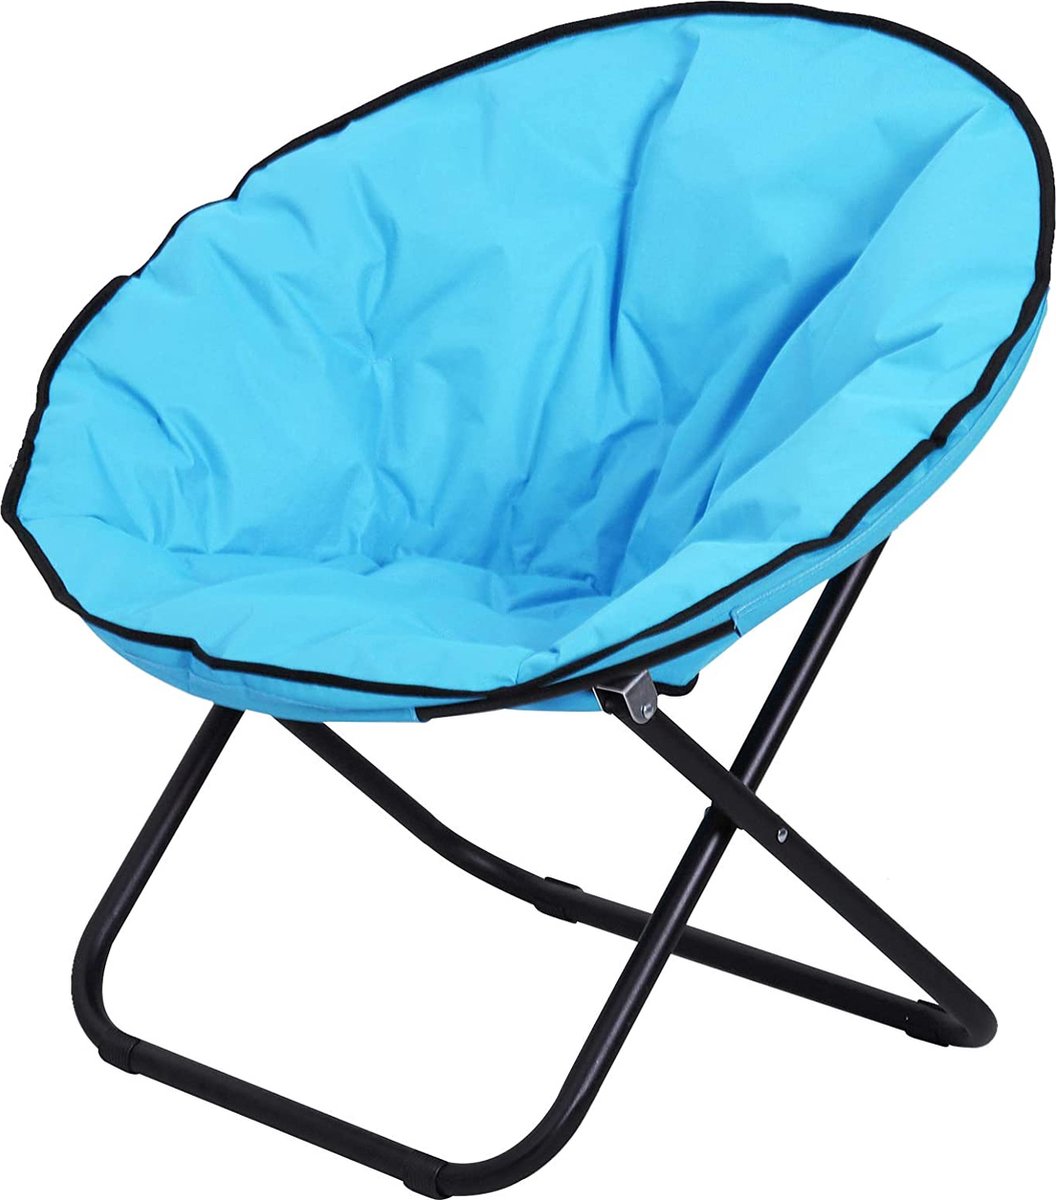 CGPN klapfauteuil klapstoel campingstoel tuinstoel gestoffeerde stoel lounge stoel opvouwbaar metaal + oxford stof blauw 80 x 80 x 75 cm